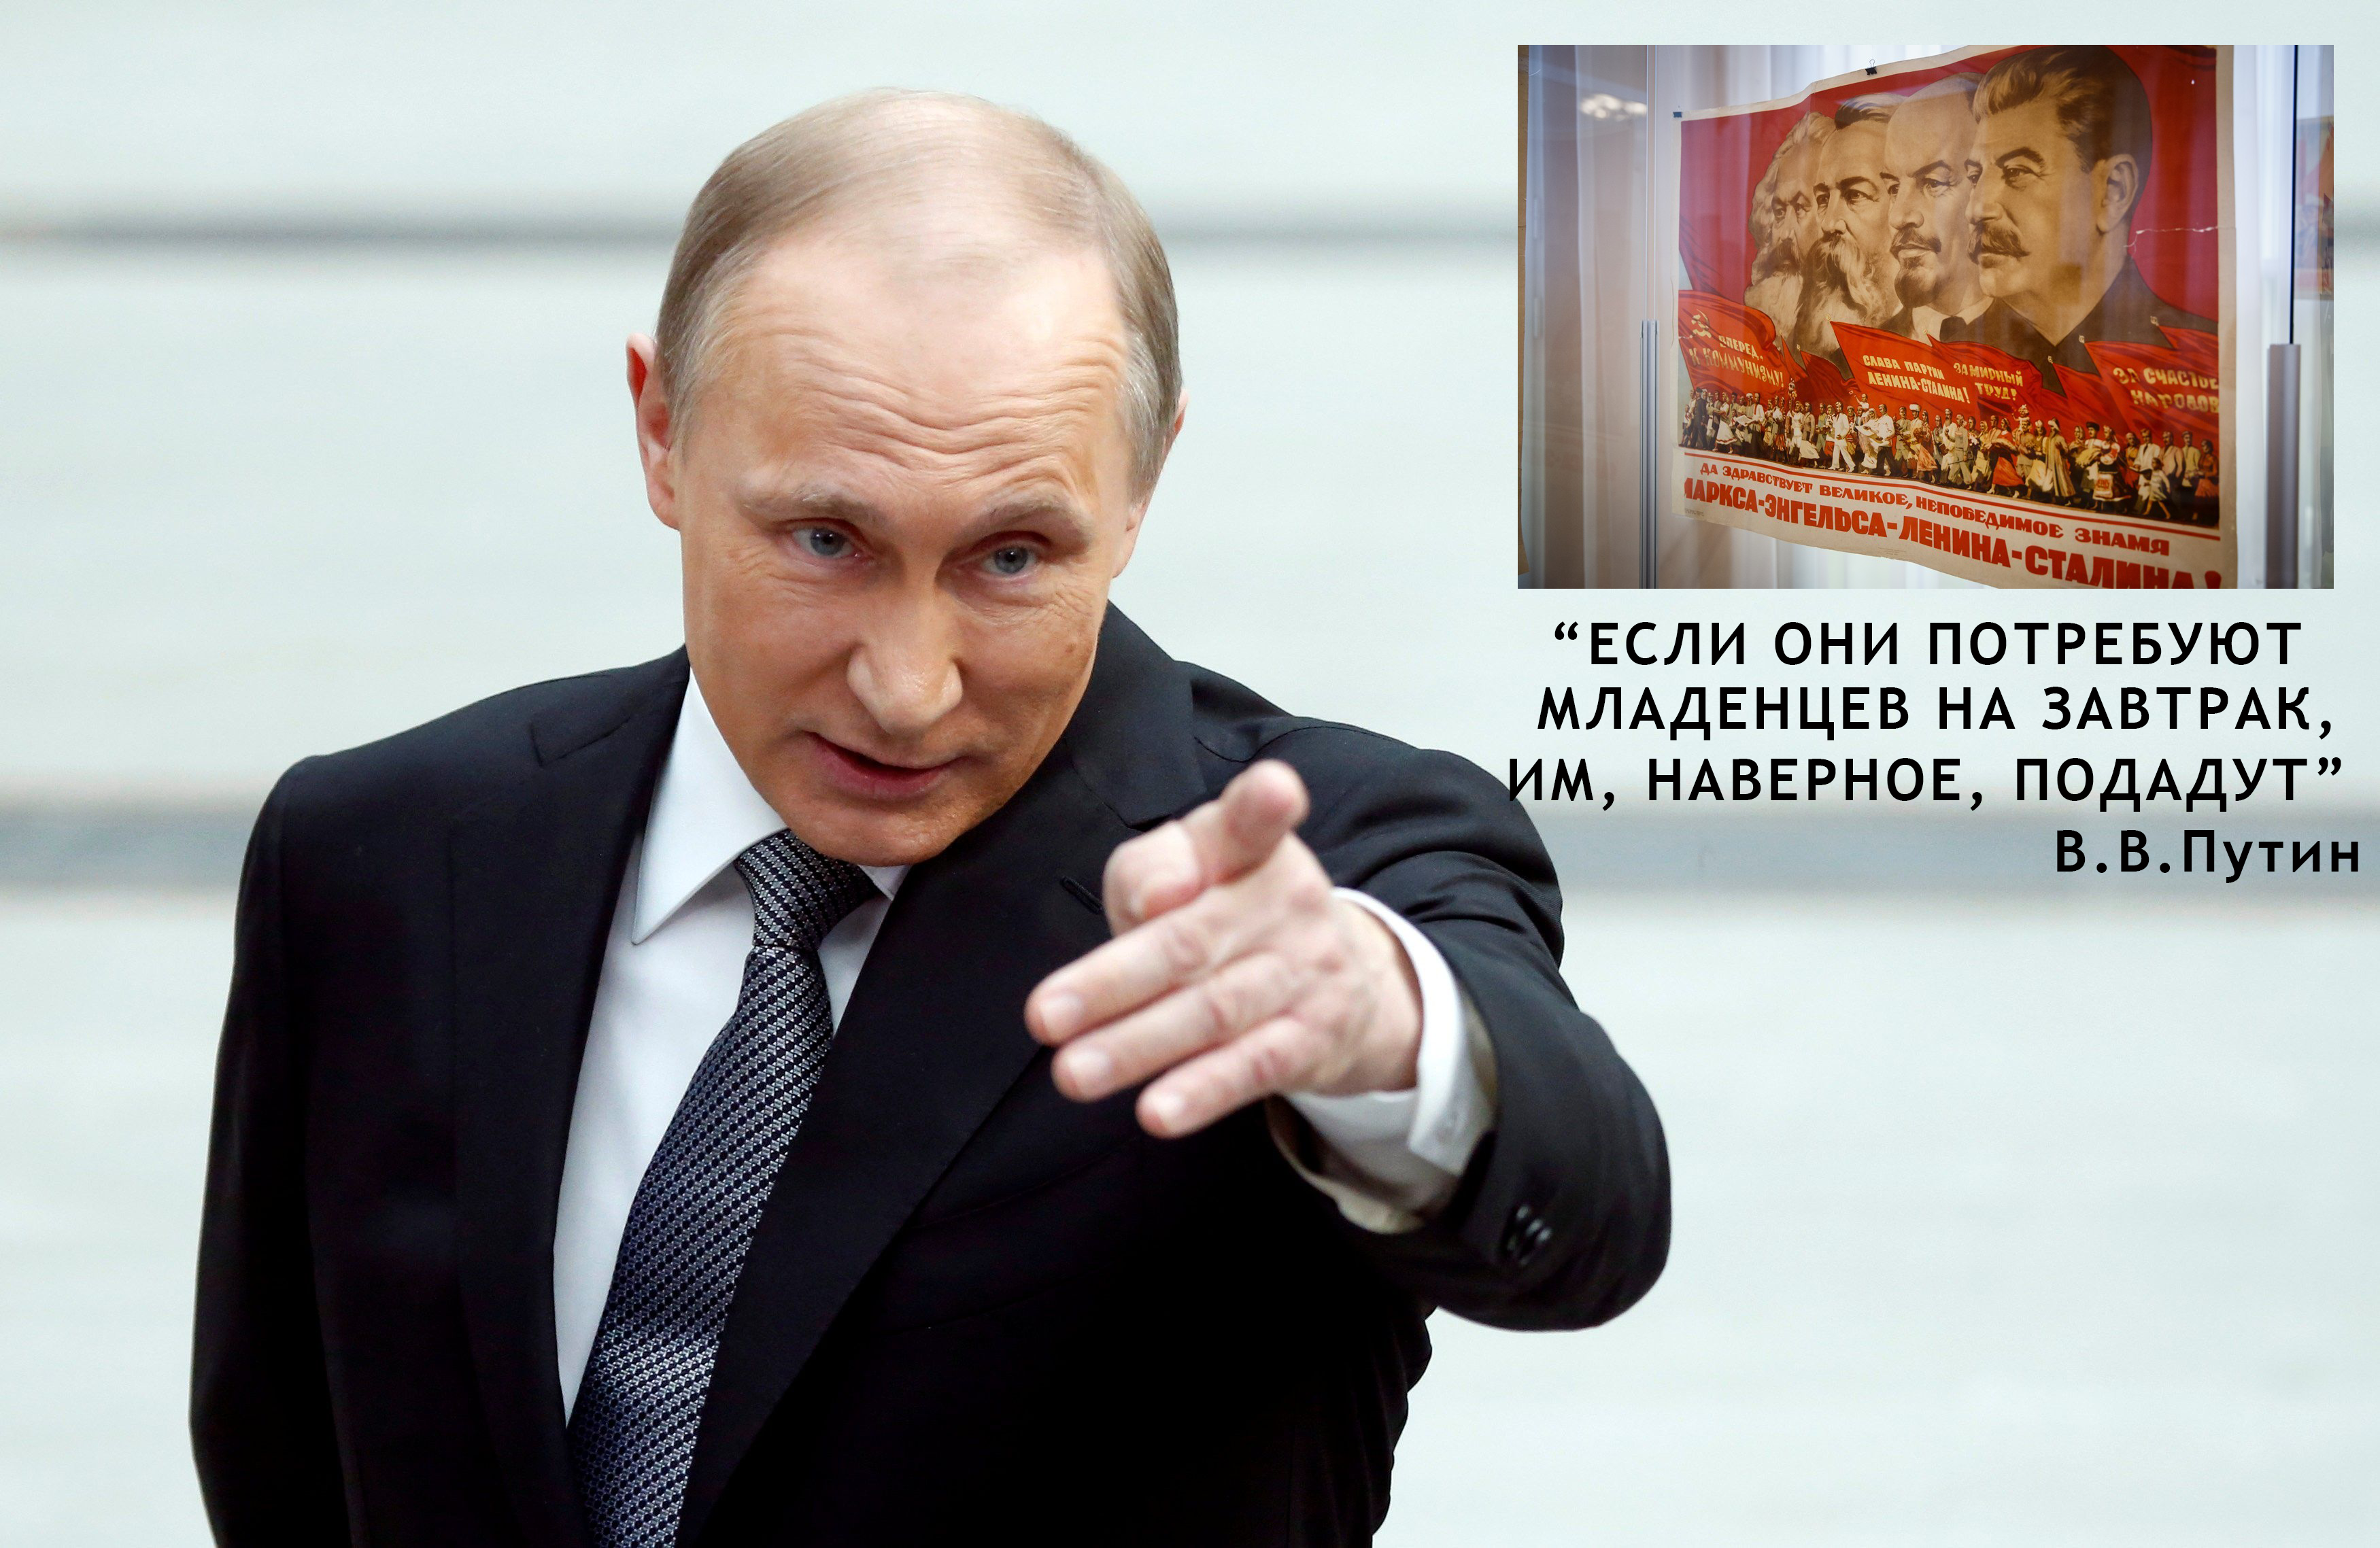 РоSSия и Путин-череп: в эфире польского телевидения появилась скандальная графика